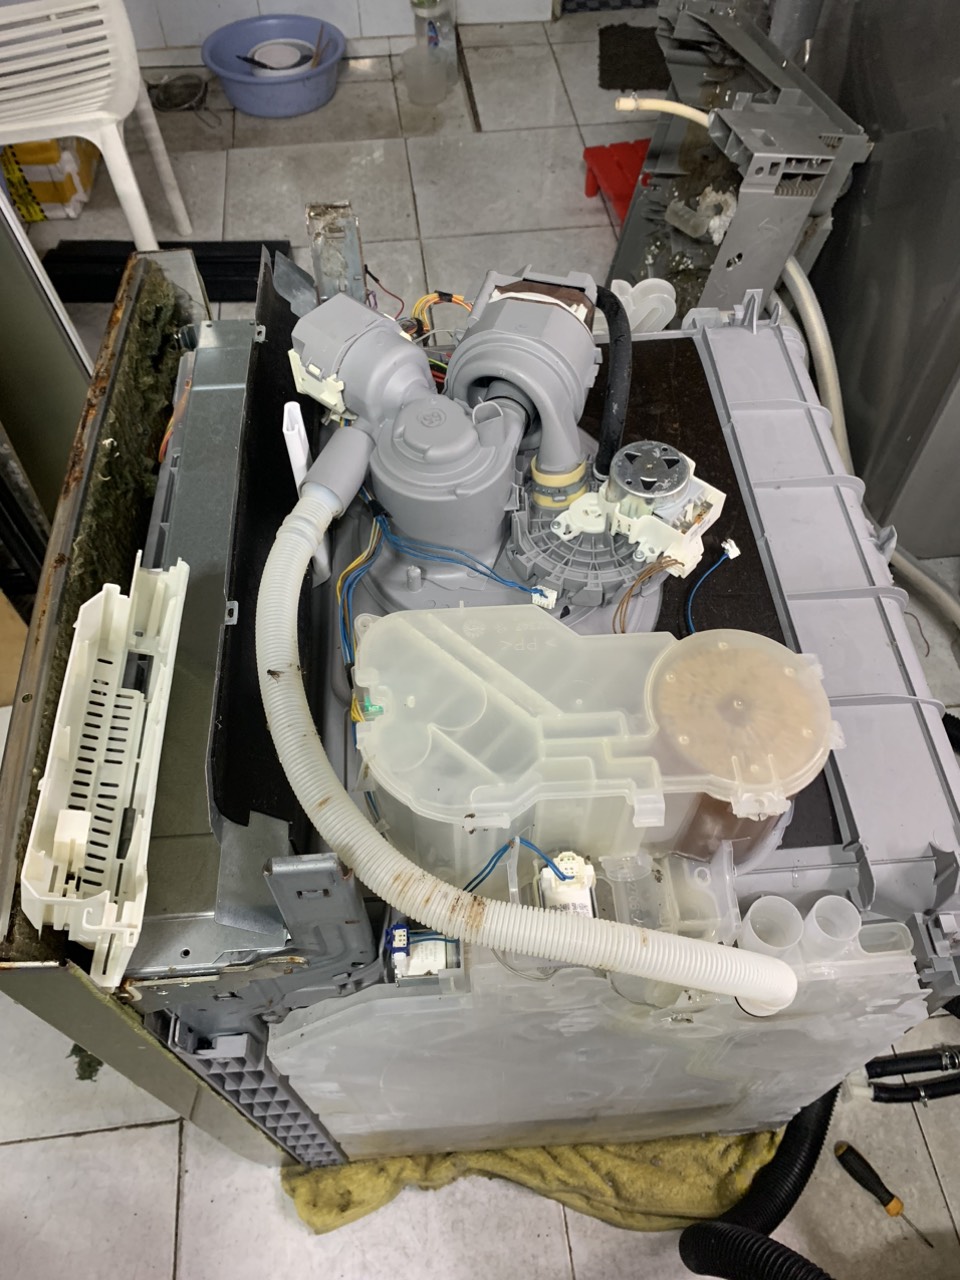 z4499060694337 5ad73955dcc77a15495cb0d63394b5f5 - Sửa máy rửa bát Bosch tại nhà uy tín chất lượng ở Sài Gòn